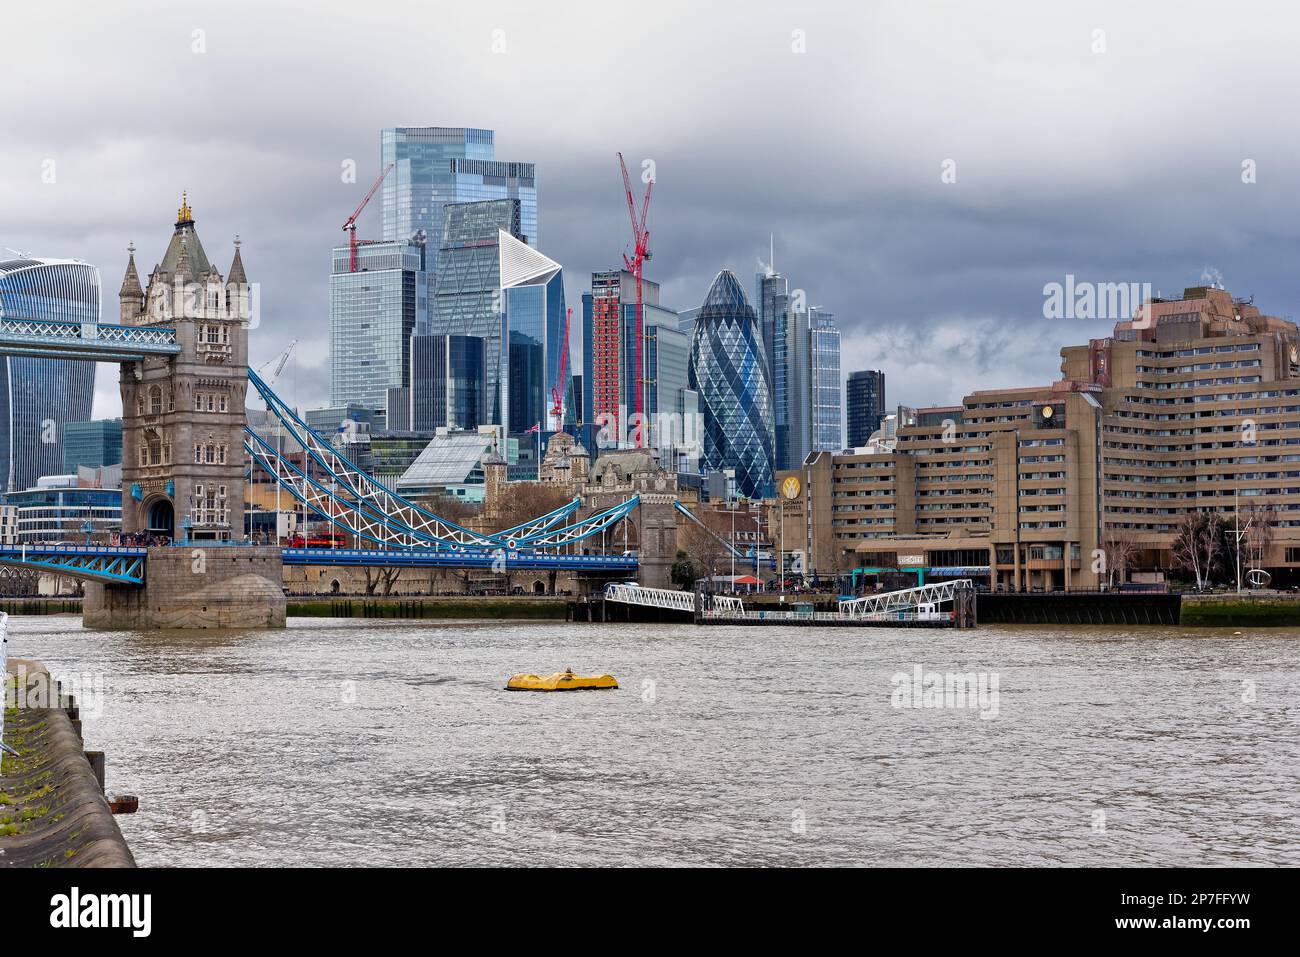 L'horizon moderne de la City de Londres contrastant avec les anciens bâtiments Angleterre Royaume-Uni Banque D'Images